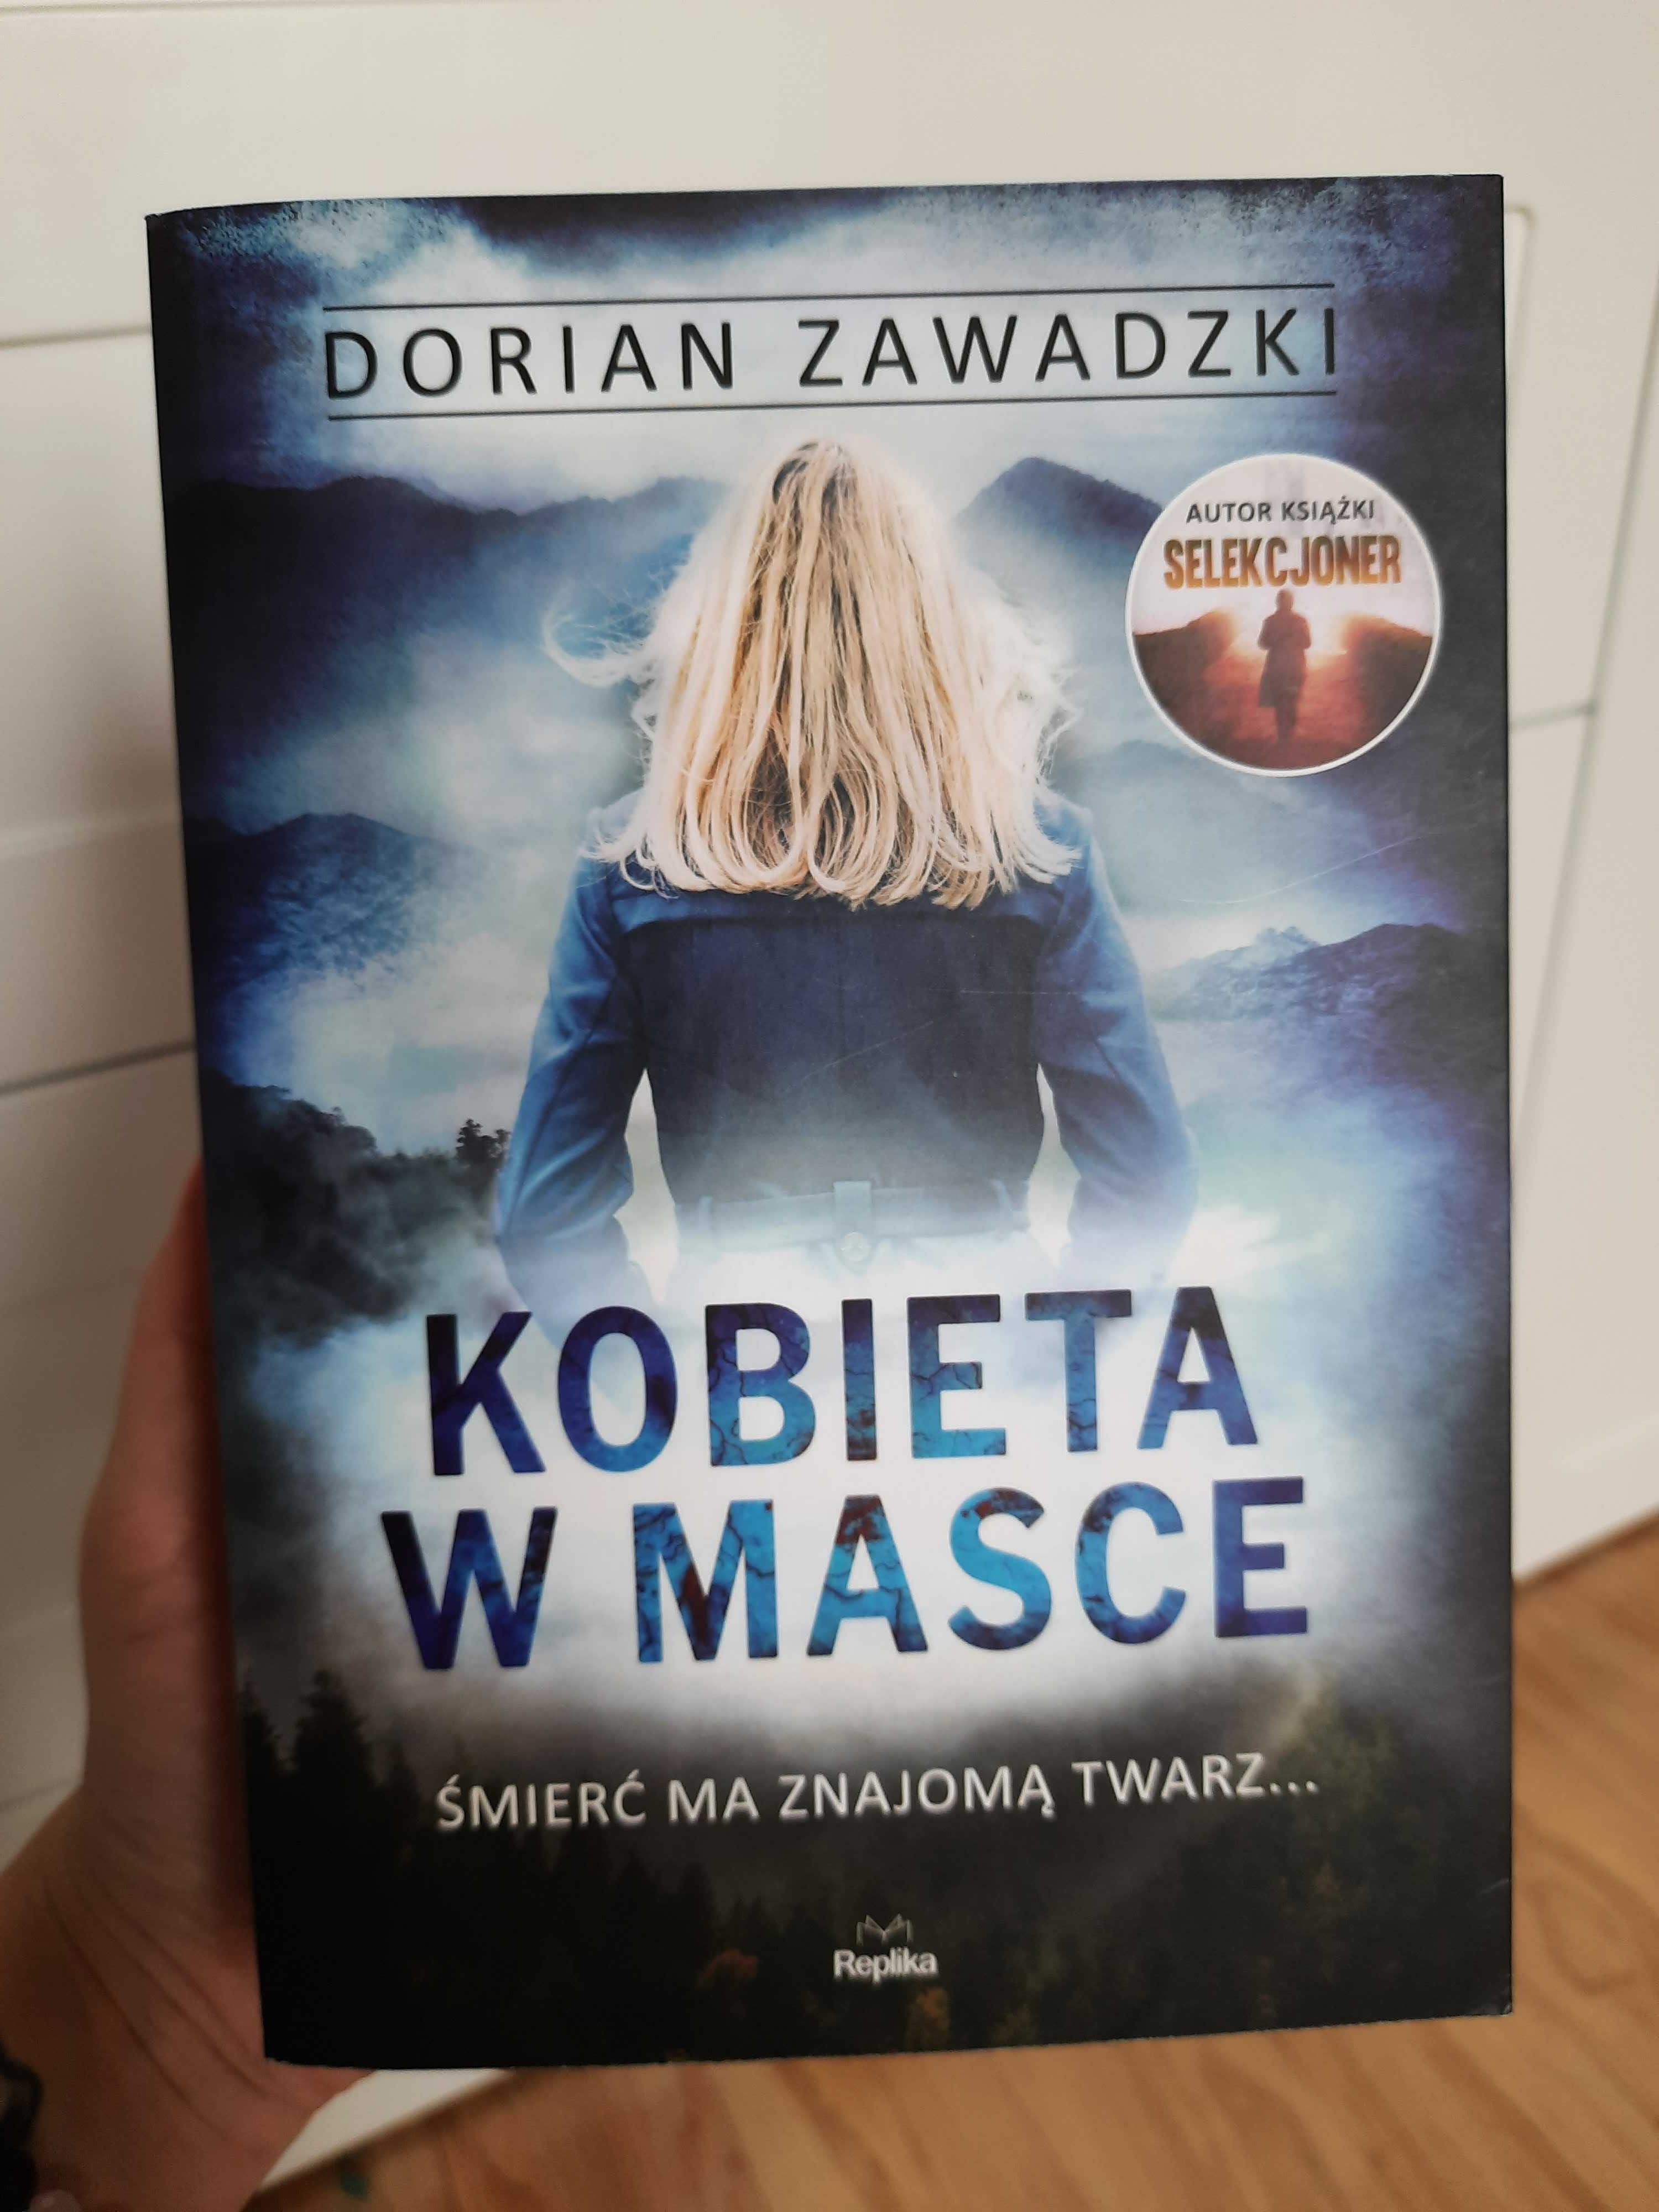 Dorian Zawadzki "Kobieta w masce"